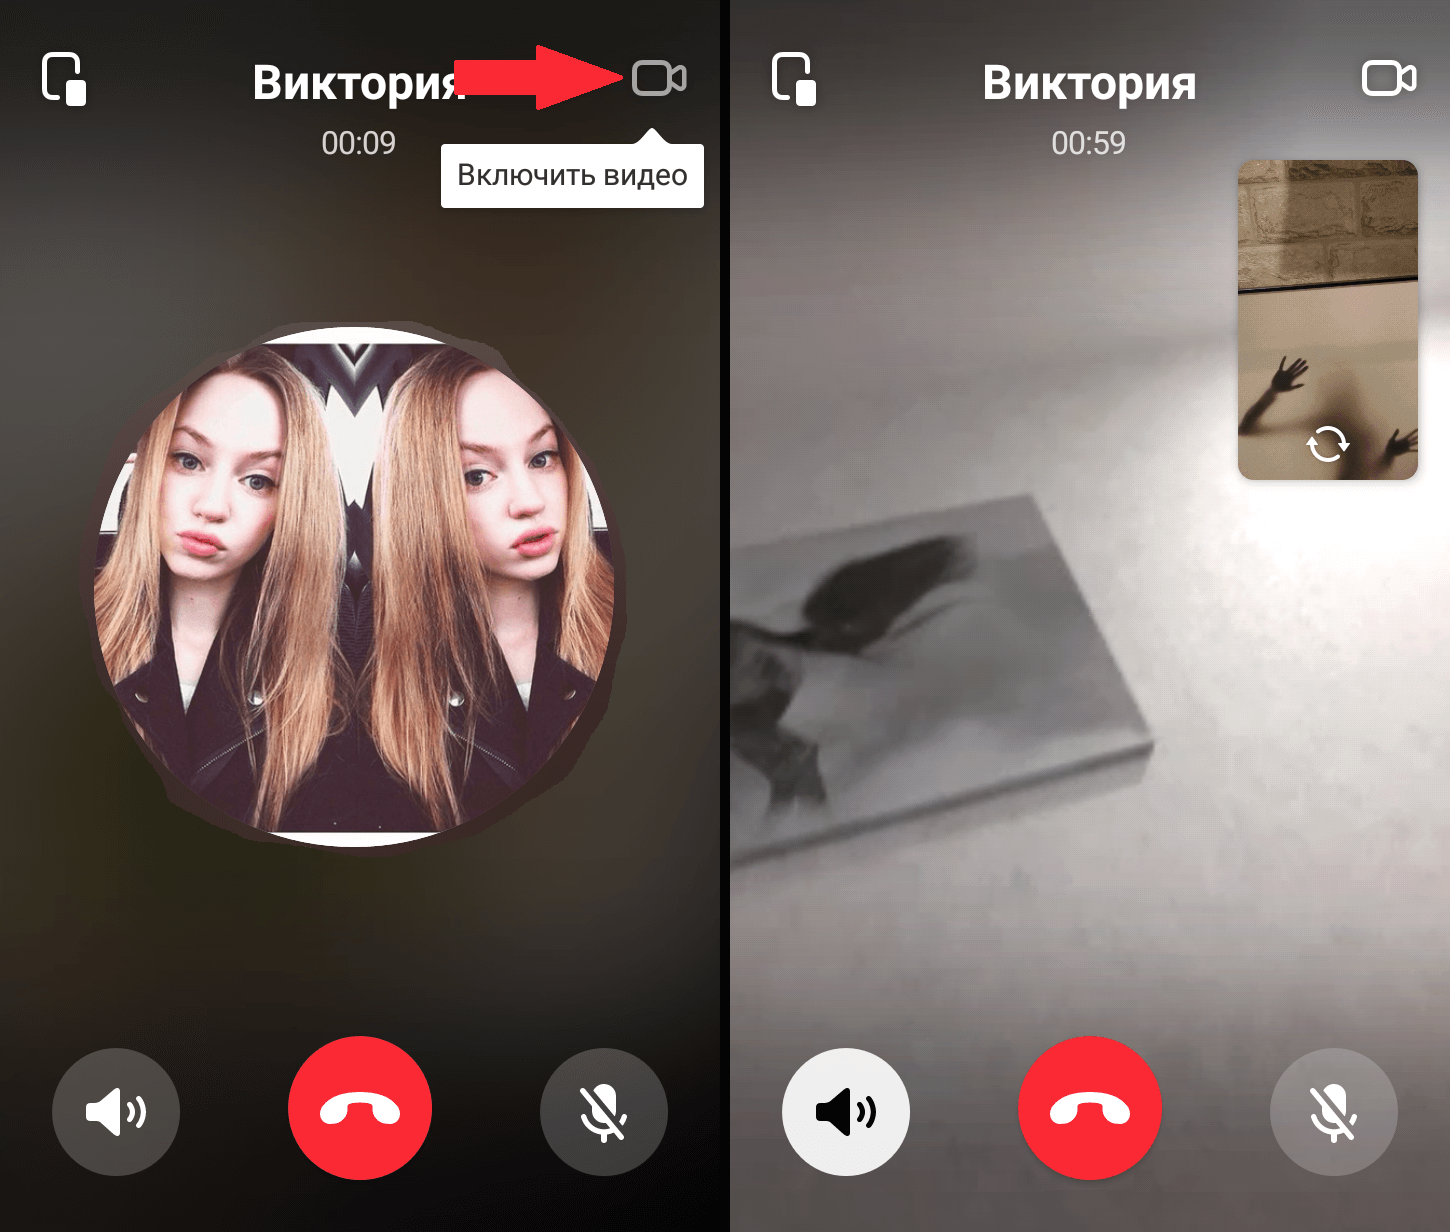 Голосовые и видеозвонки вконтакте - как активировать и позвонить бесплатно